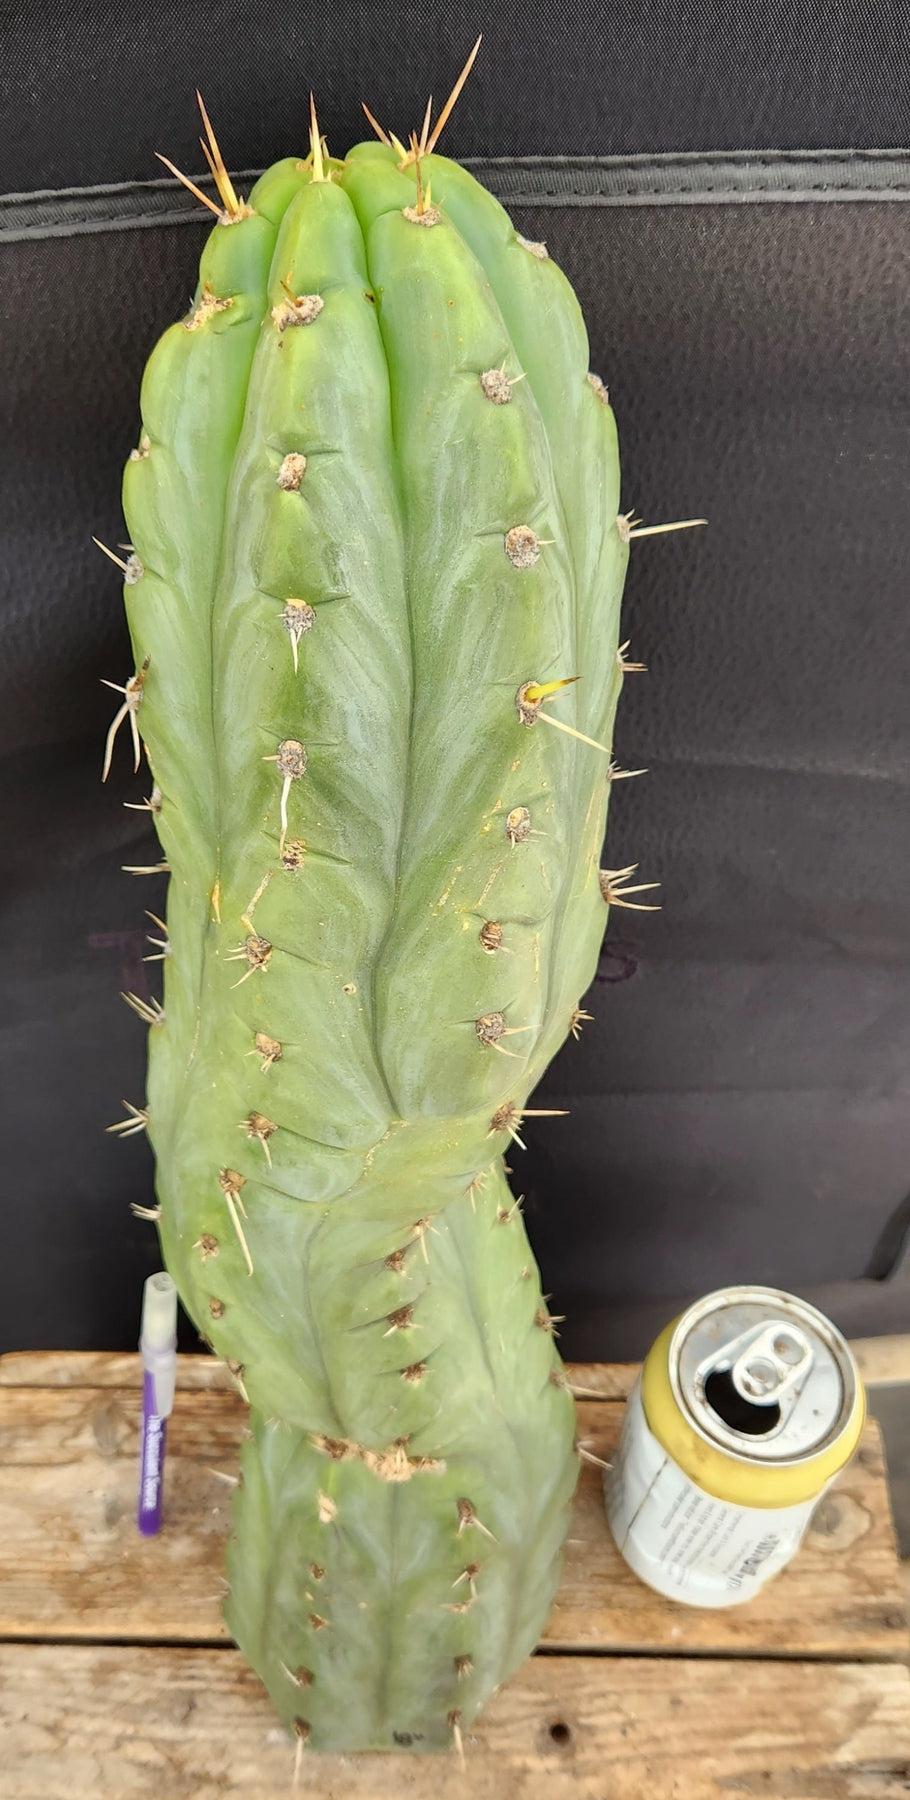 #EC189 EXACT Trichocereus "Mutt" Ornamental Cactus 18” cutting-Cactus - Large - Exact-The Succulent Source